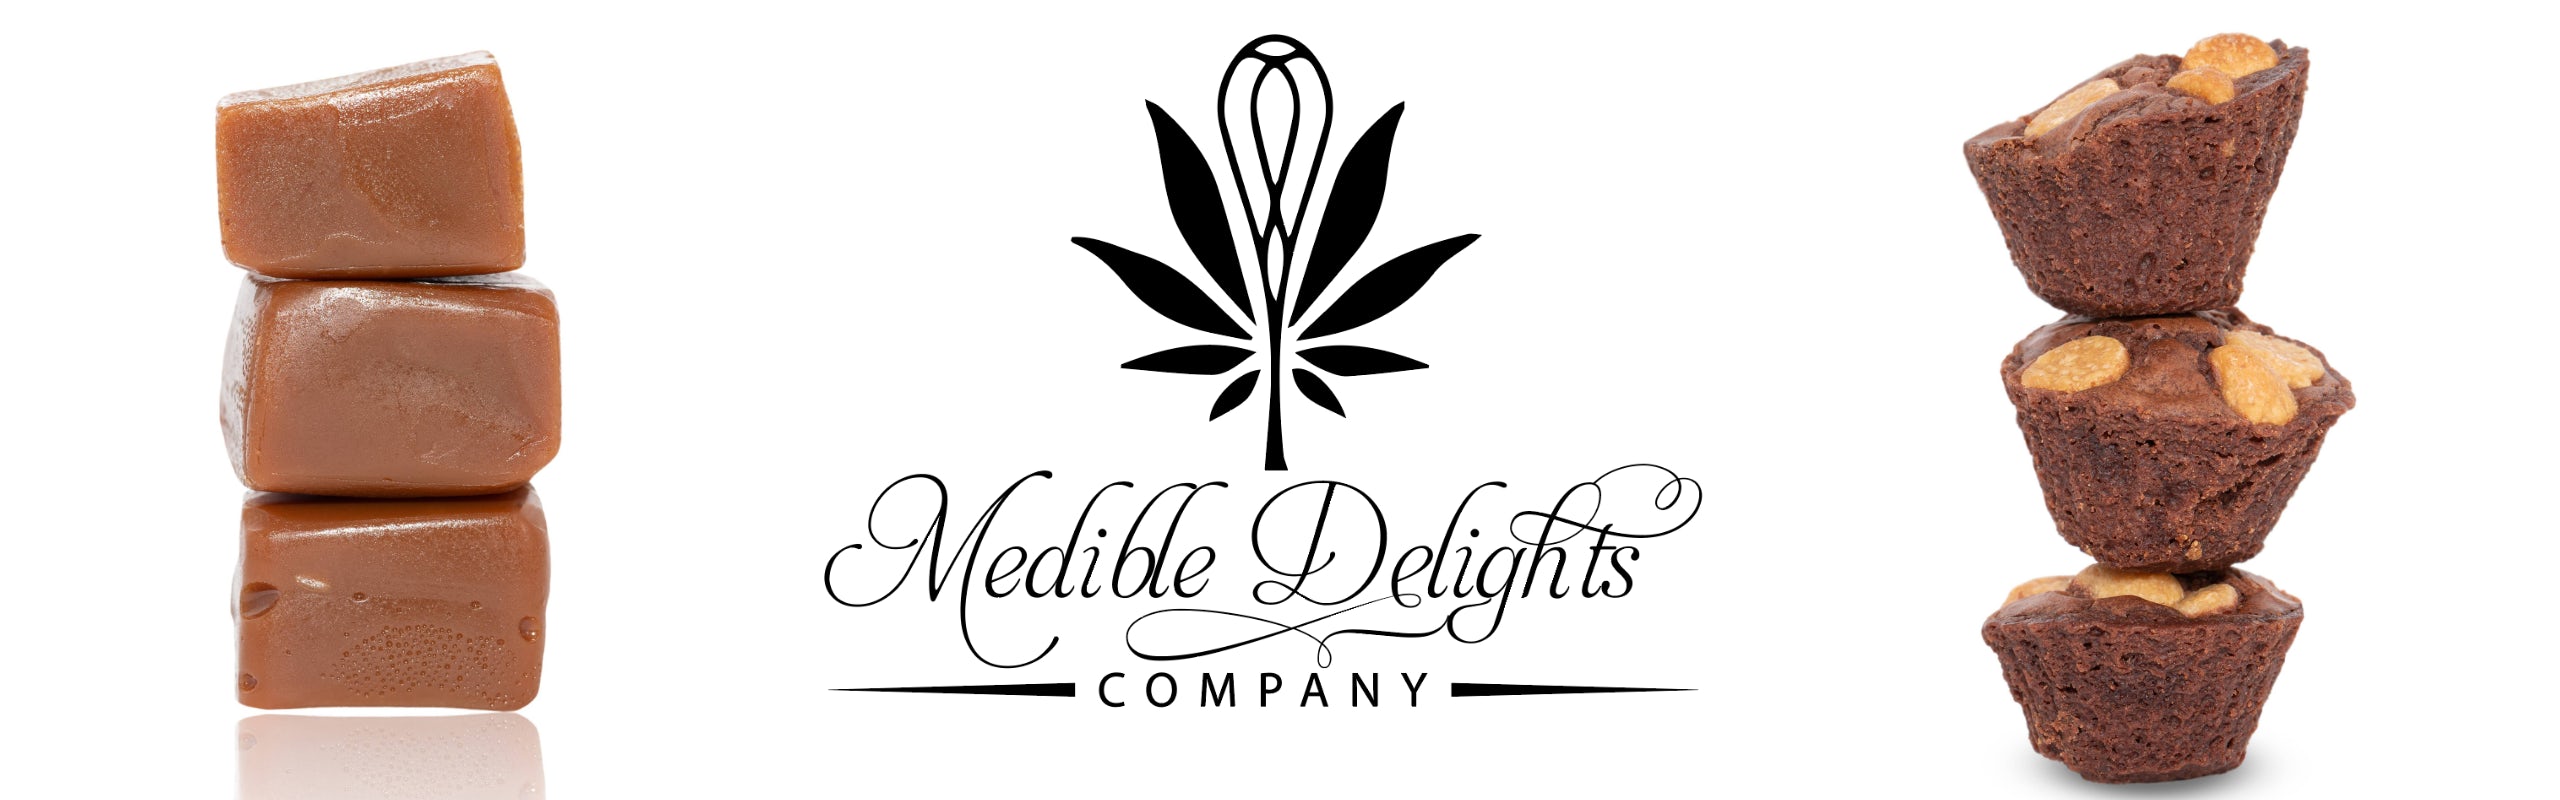 Medible Delights banner